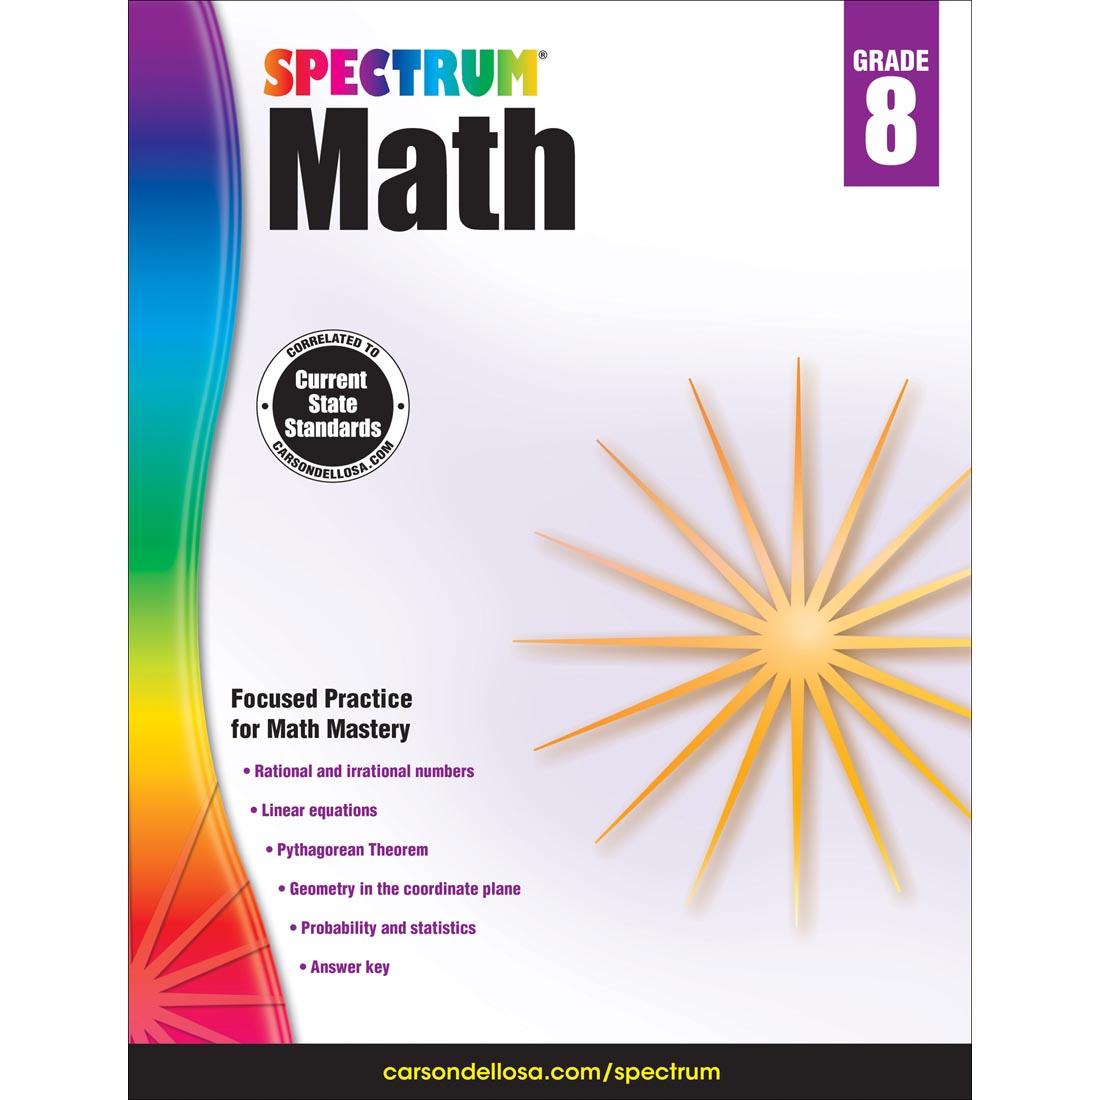 Spectrum Math Book by Carson Dellosa Grade 8